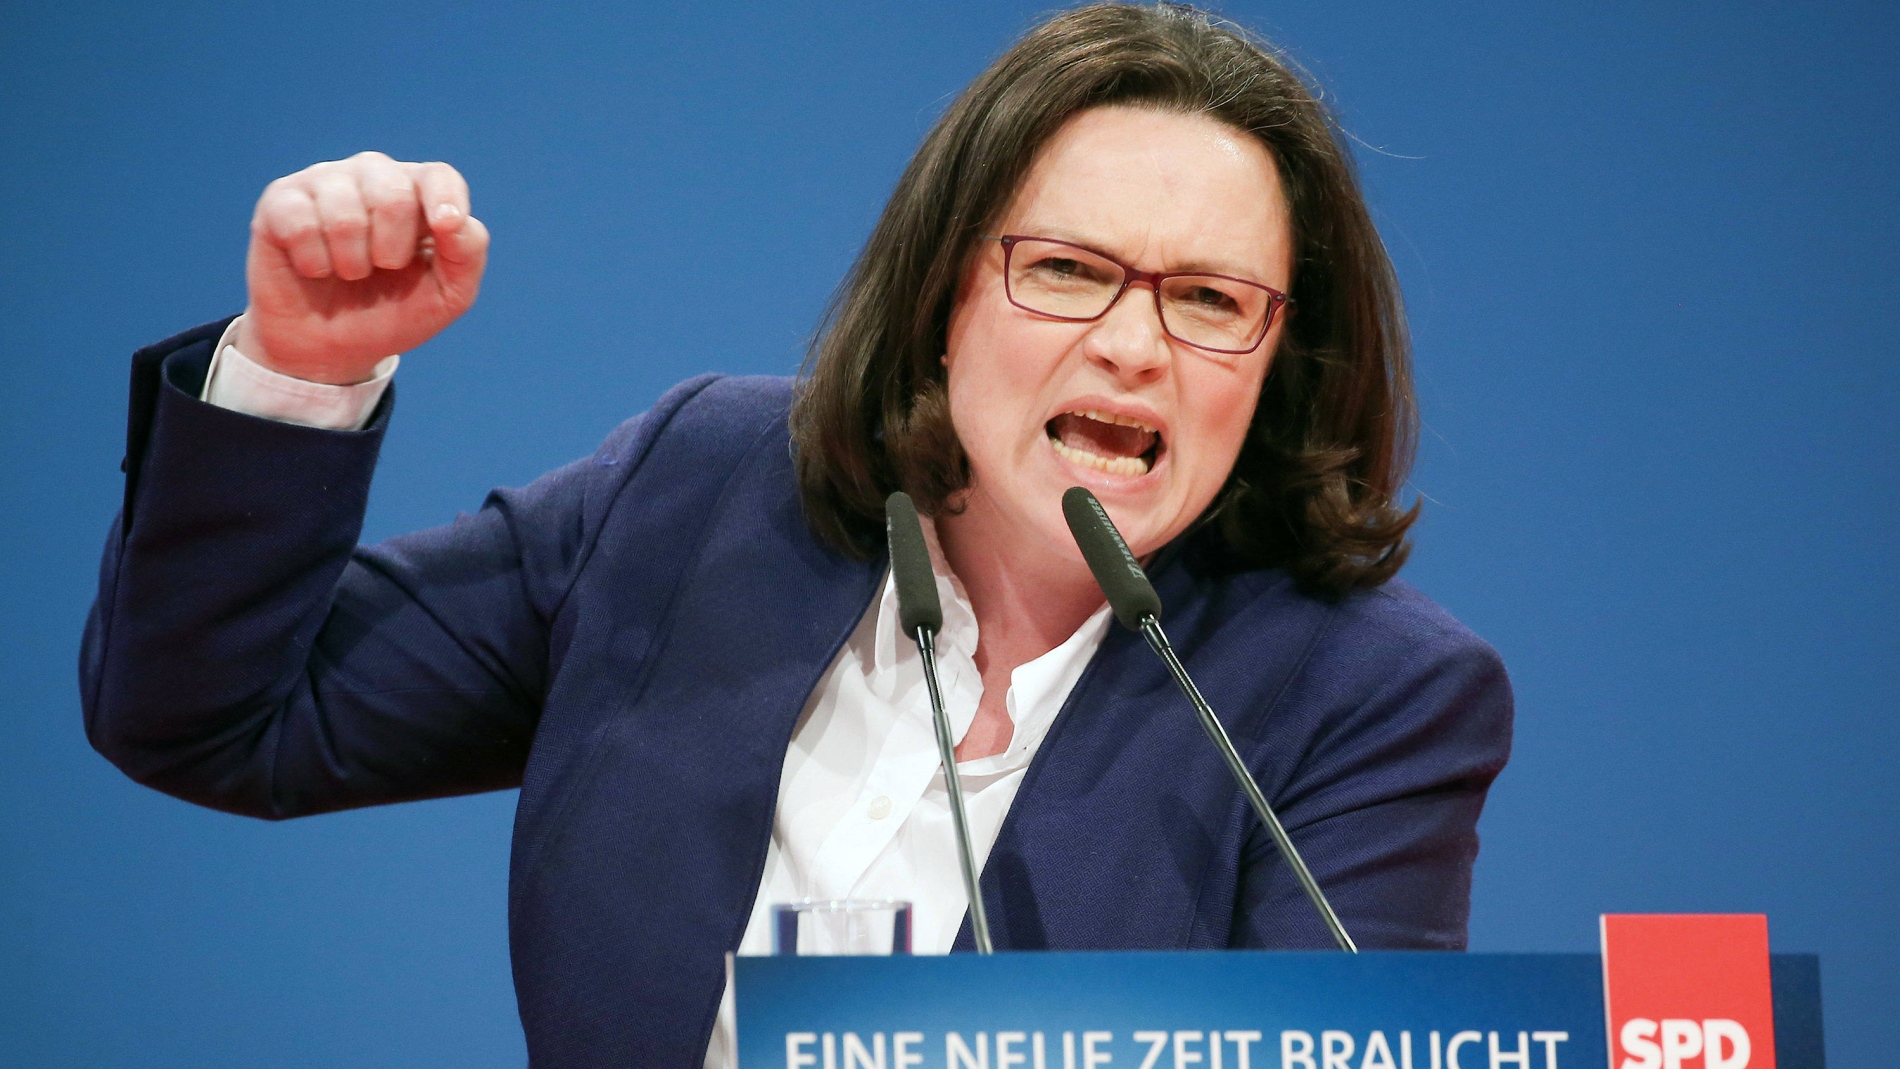 Γερμανία: Μόλις 13% στην πρόθεση ψήφου για την Αντρέα Νάλες – Ένας στους δύο θα ψήφιζαν Μέρκελ